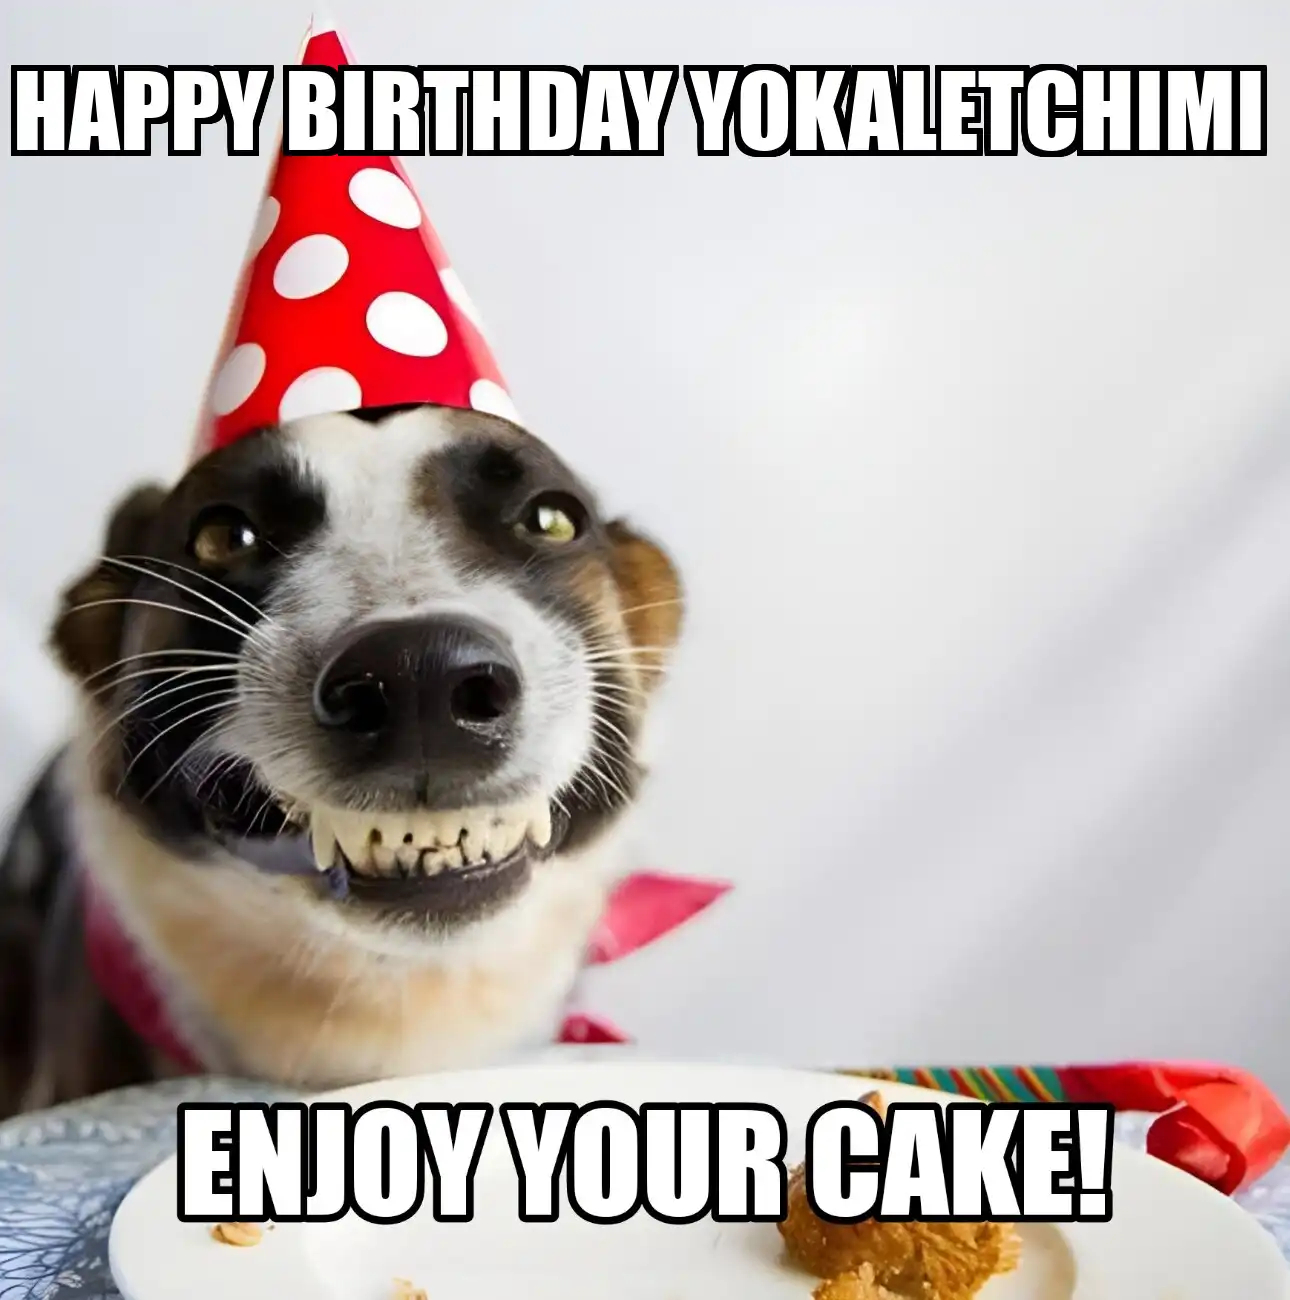 Happy Birthday Yokaletchimi Enjoy Your Cake Dog Meme